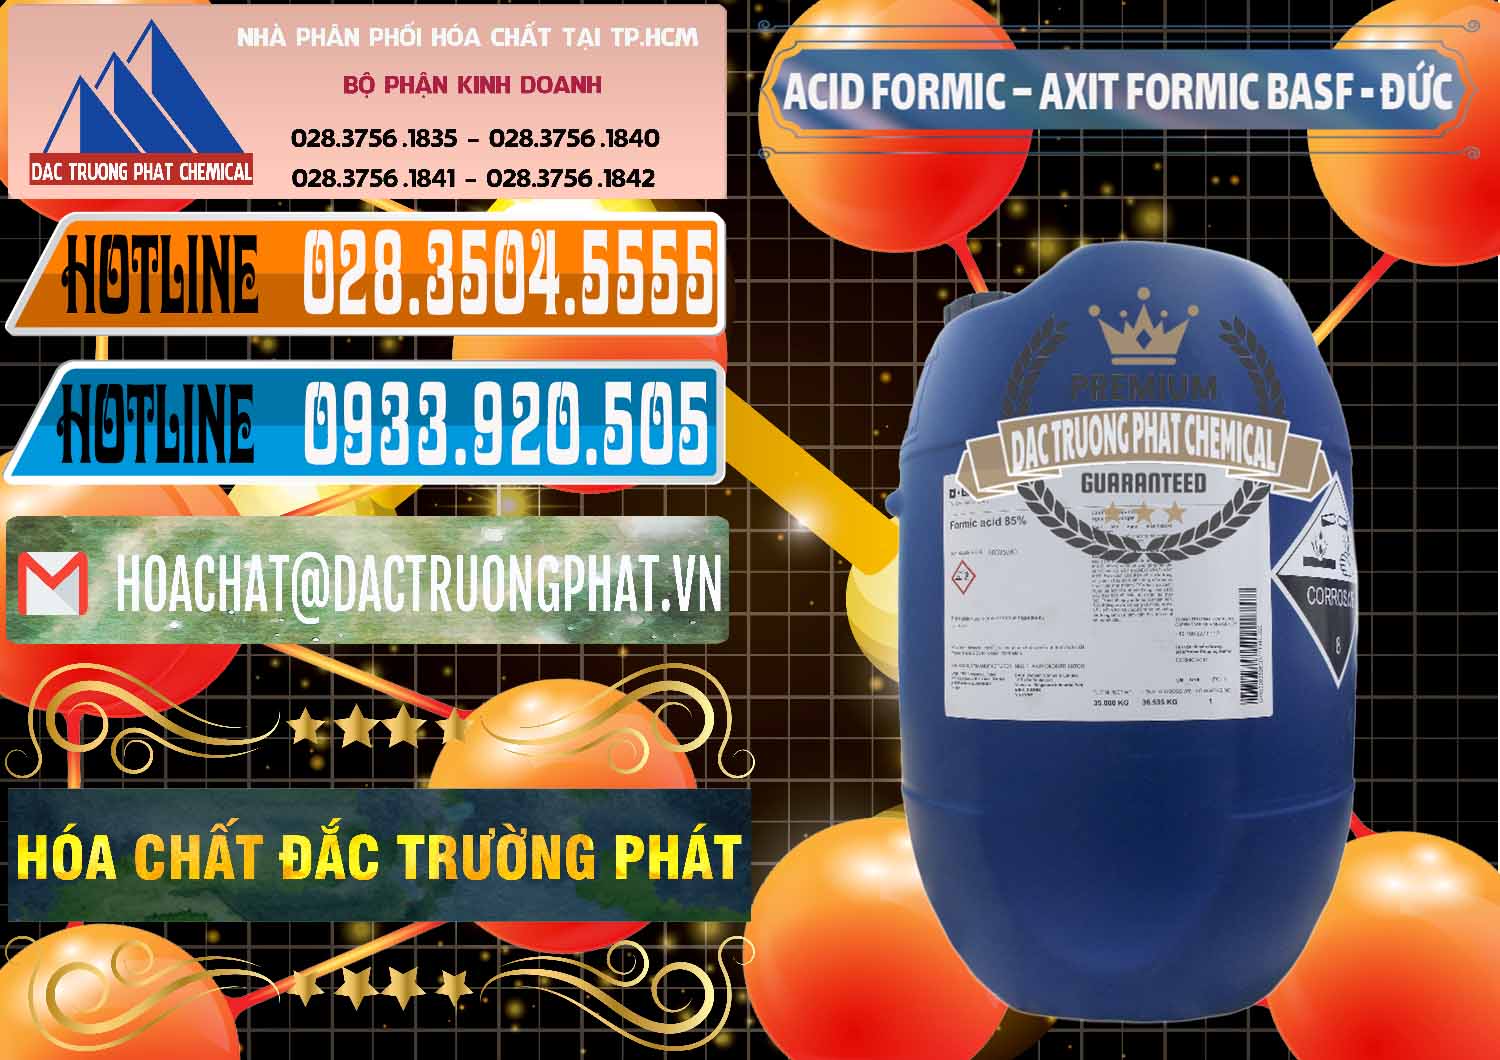 Chuyên bán - cung cấp Acid Formic - Axit Formic BASF Đức Germany - 0028 - Cty chuyên cung cấp ( bán ) hóa chất tại TP.HCM - stmp.net